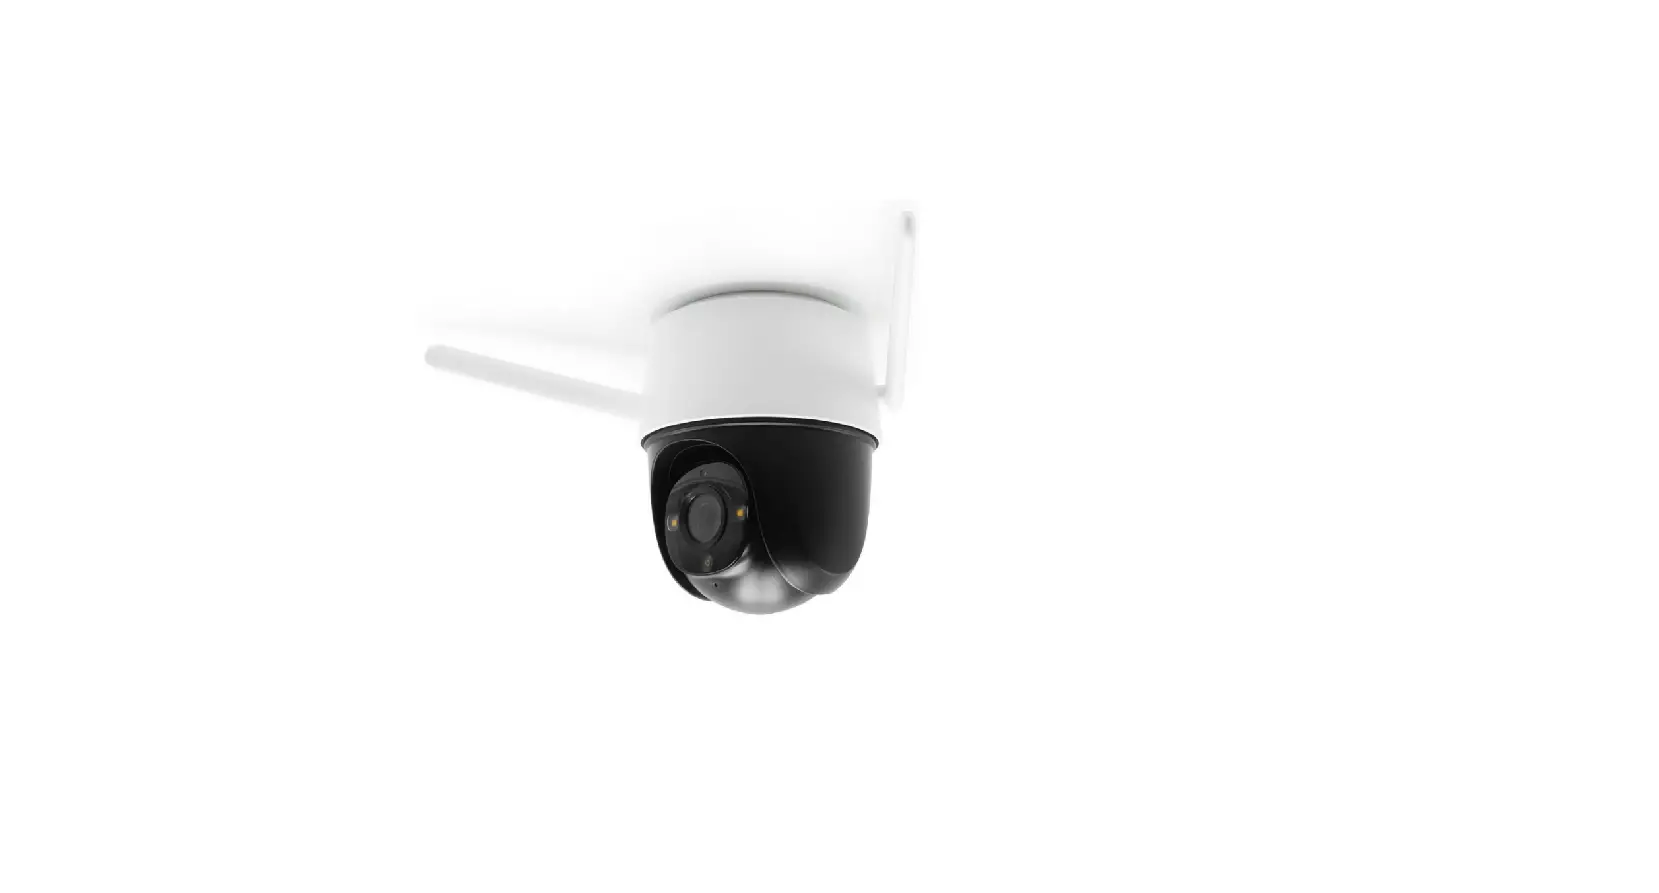 Orb-Outdoor 4MP Indoor-Outdoor Pan Tilt WiFi Security Camera